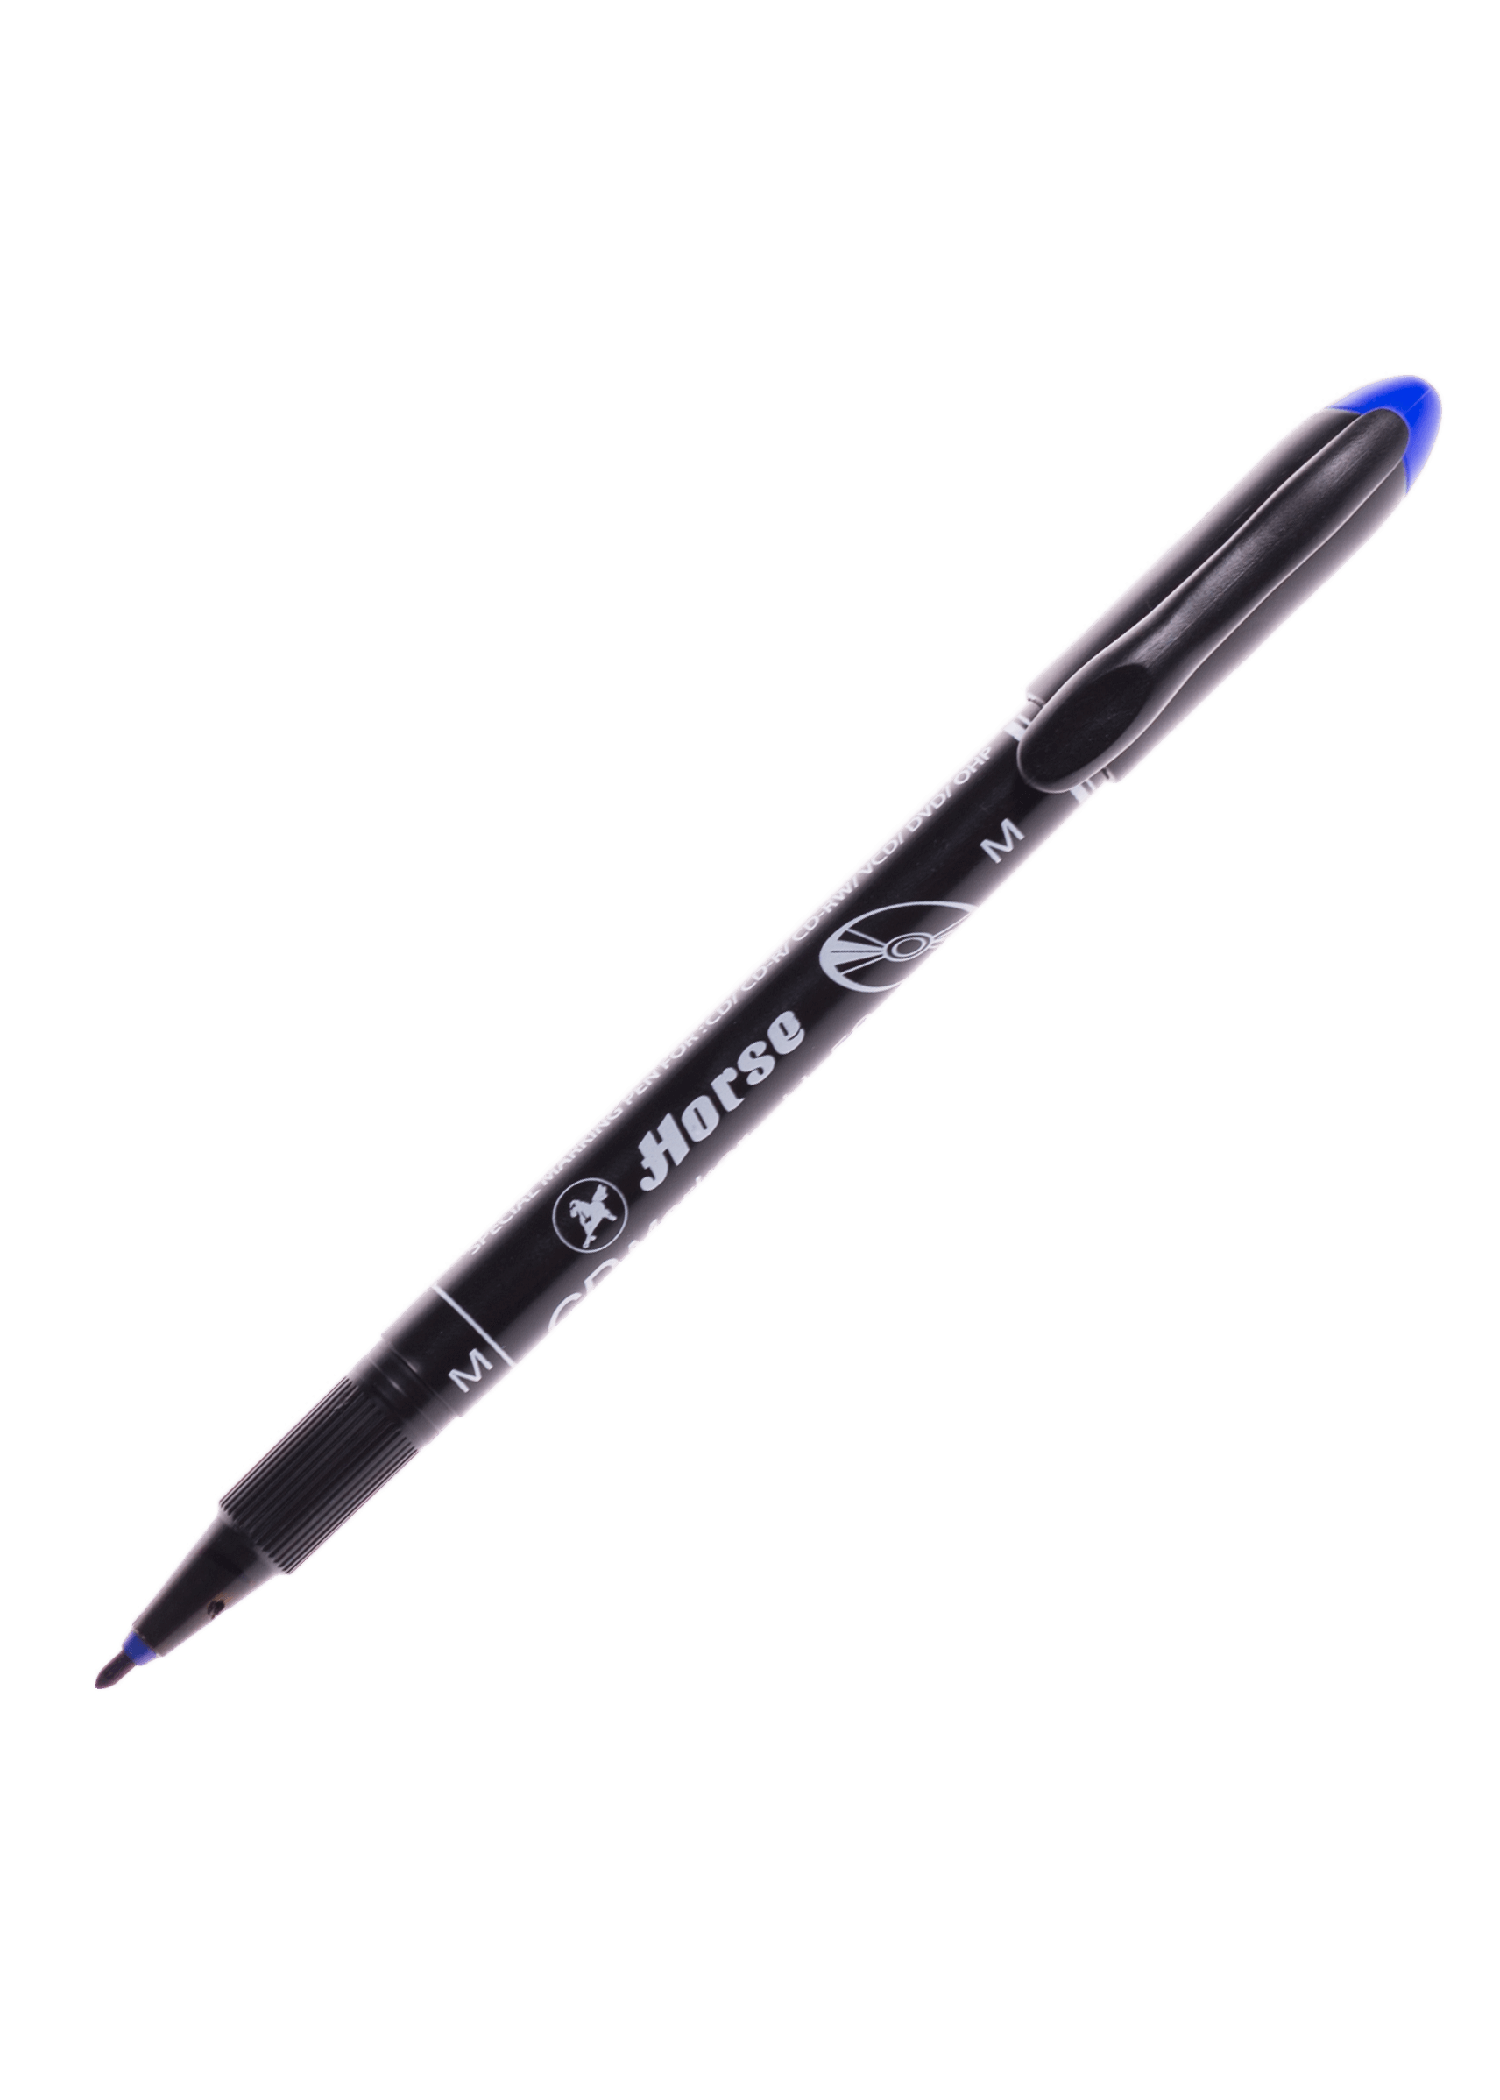 ปากกาเขียน CD ลบไม่ได้ ตราม้า H-52 (M) สีน้ำเงิน 1.0 มม.